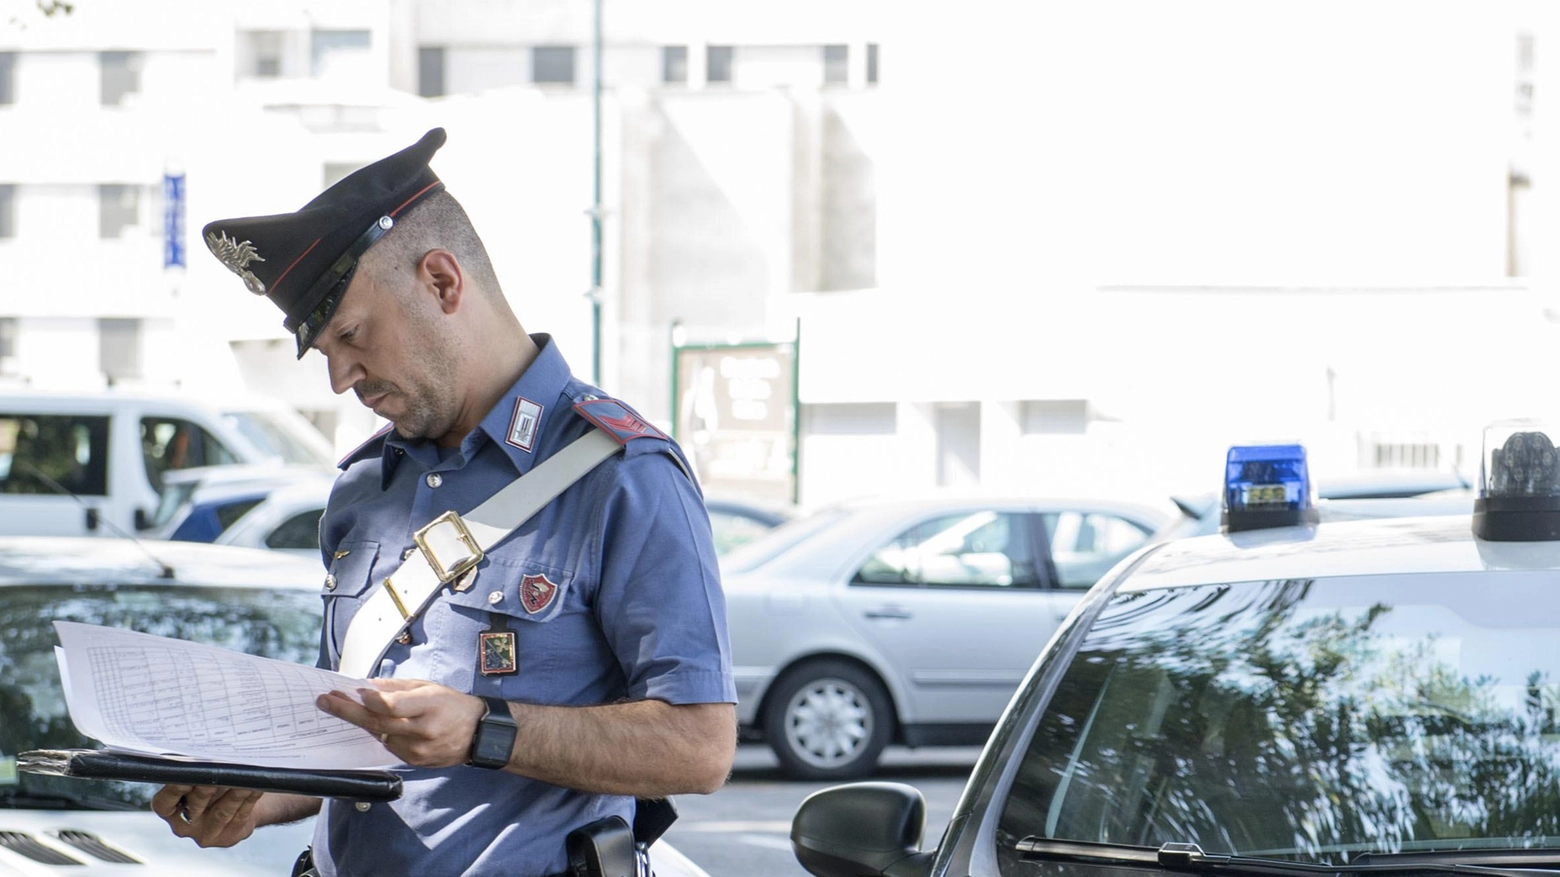 
"Cinisello Balsamo: 48enne italiano armato di coltello vicino al centro scolastico, 24enne romeno arrestato"